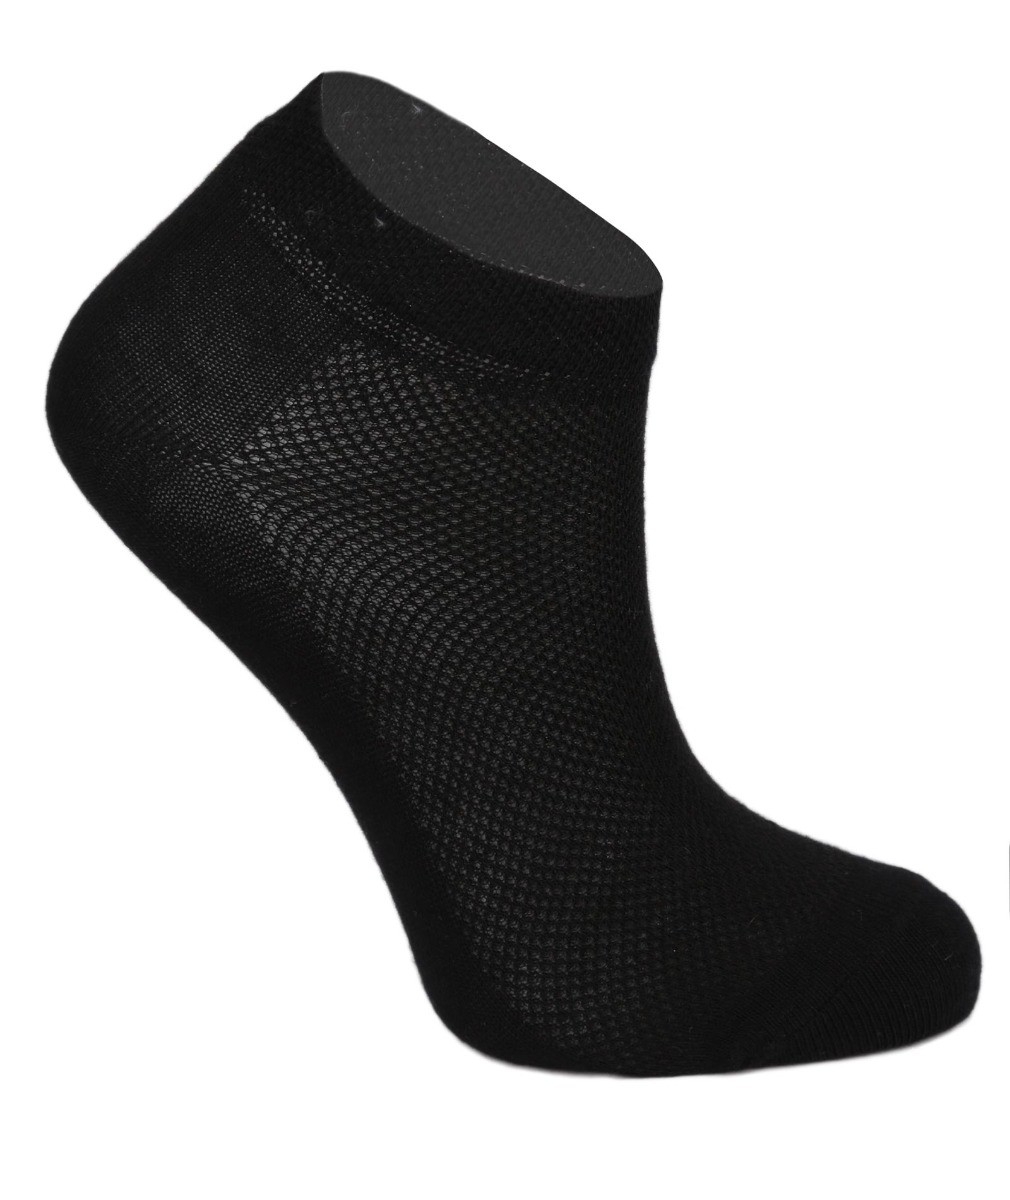 Kinder Unisex Socken aus Baumwolle - Schwarz